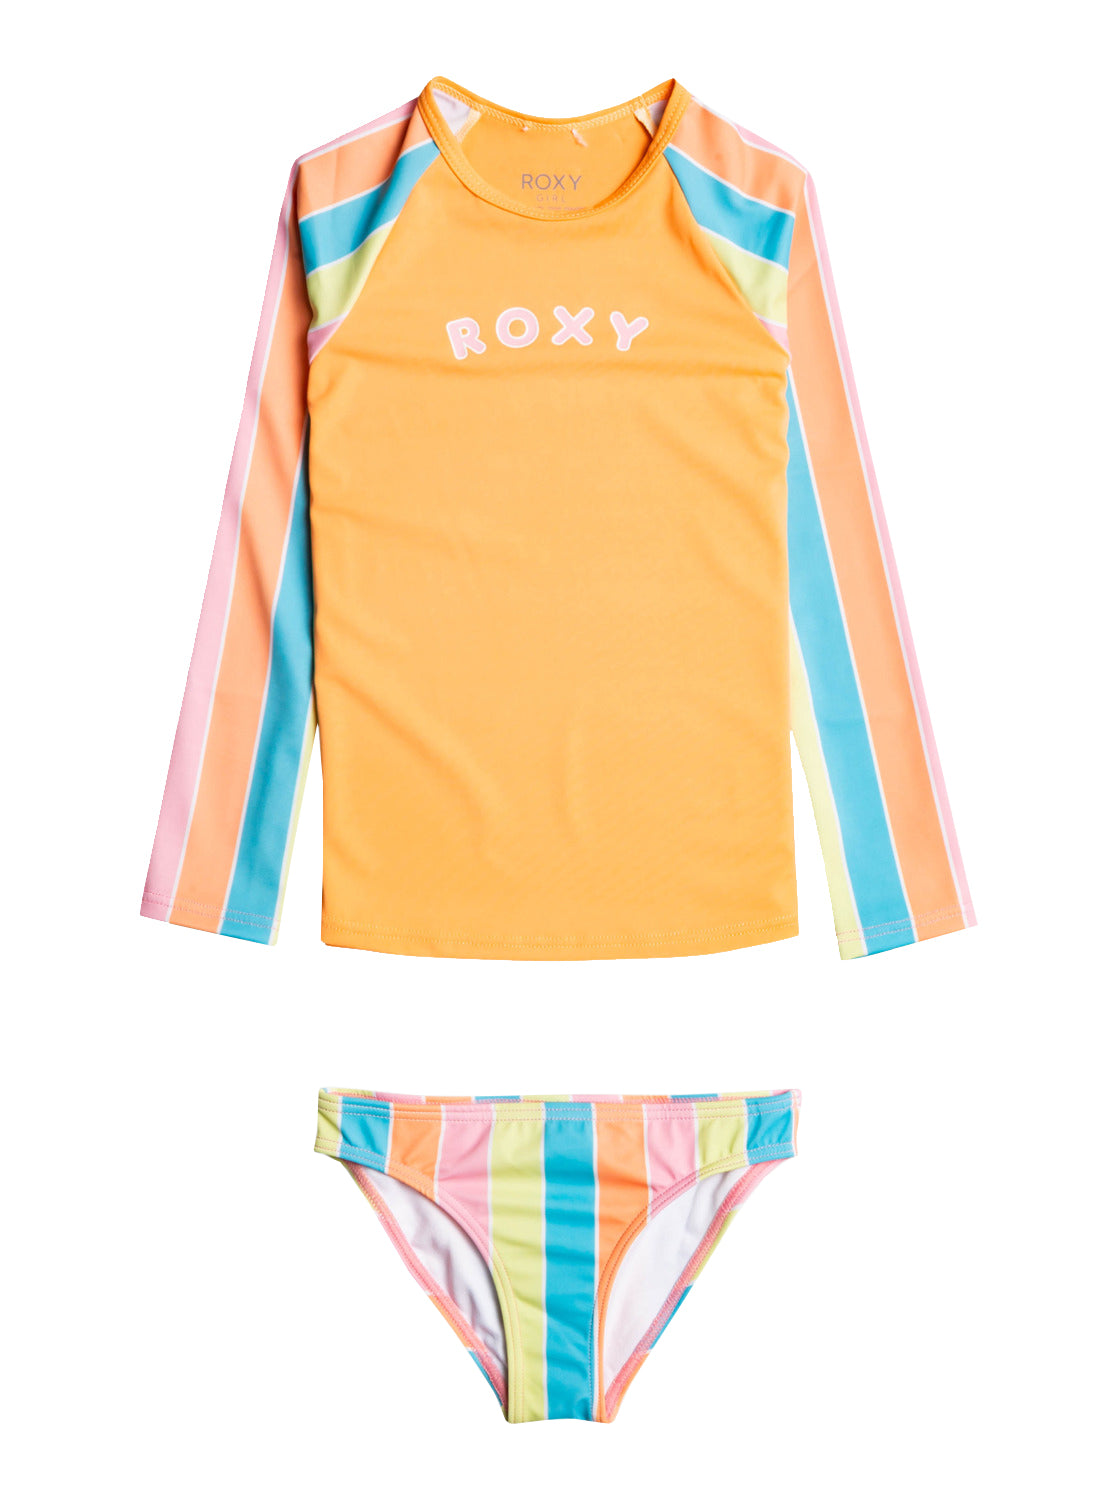 Roxy Colors Of The Sun Rashguard Bikini Set BGZ6 5